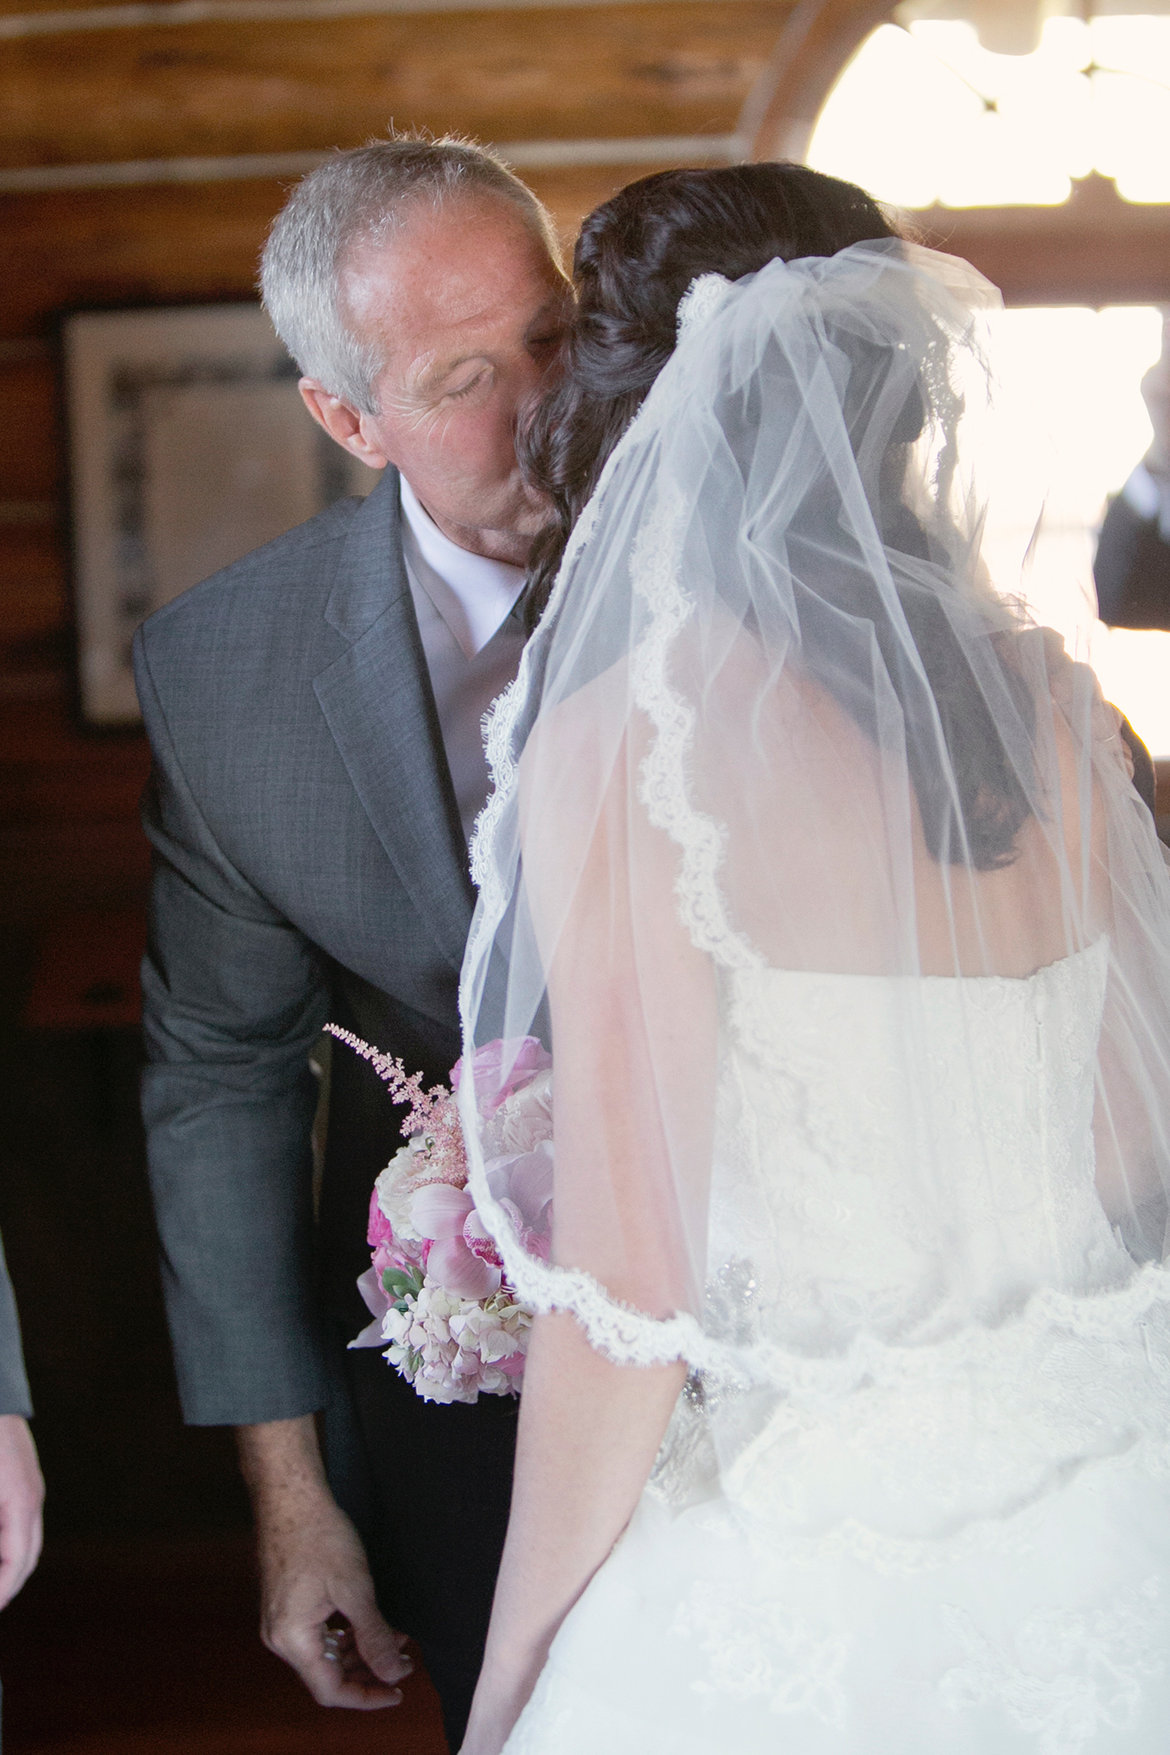 https://www.bridalguide.com/sites/default/files/blog-images/from-dianes-desk/etiquette-q-a/lift-the-veil/wedding-veil.jpg